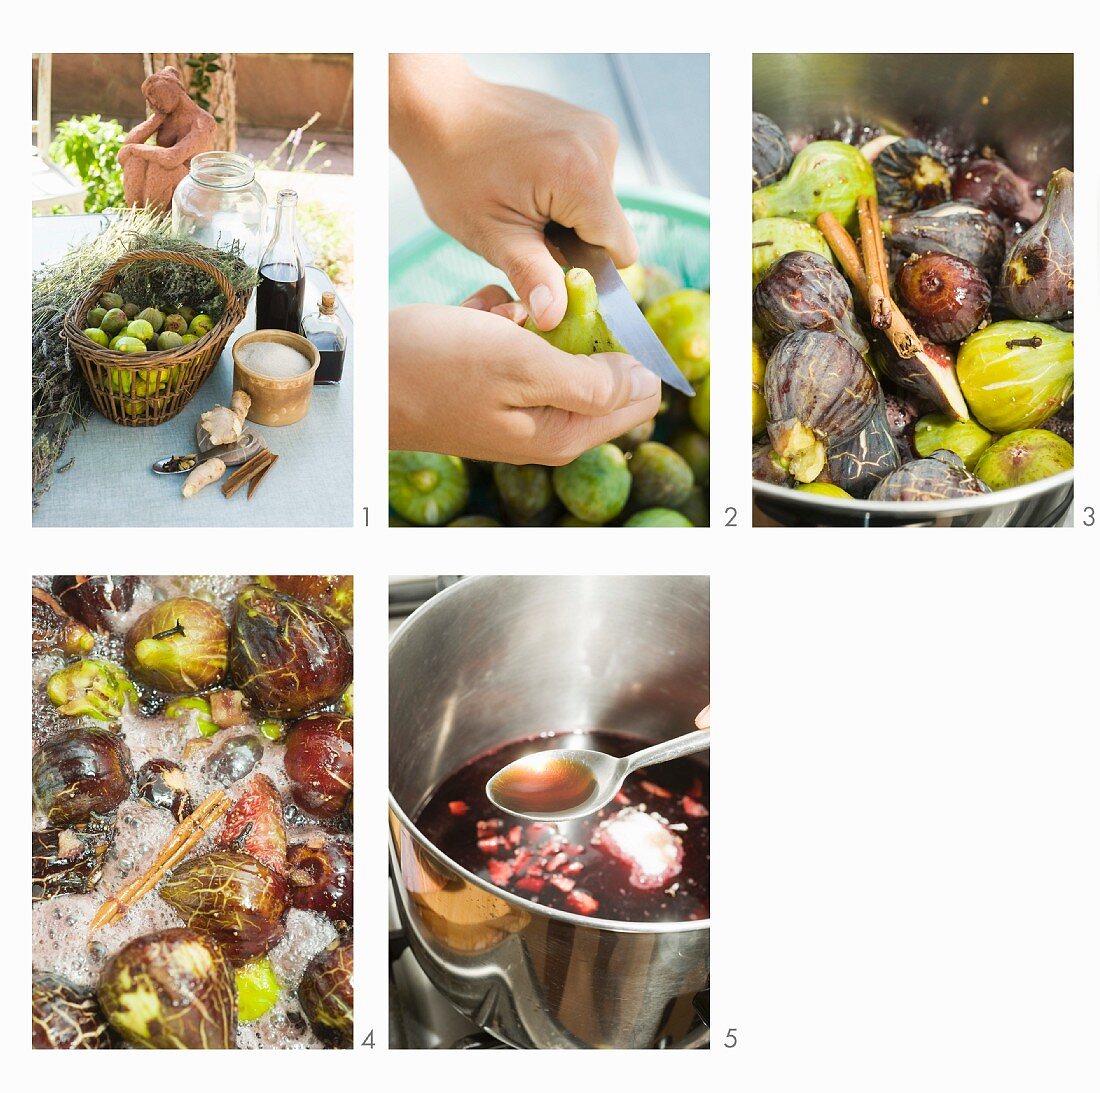 Preparare i fichi al balsamico (balsamic figs being prepared)